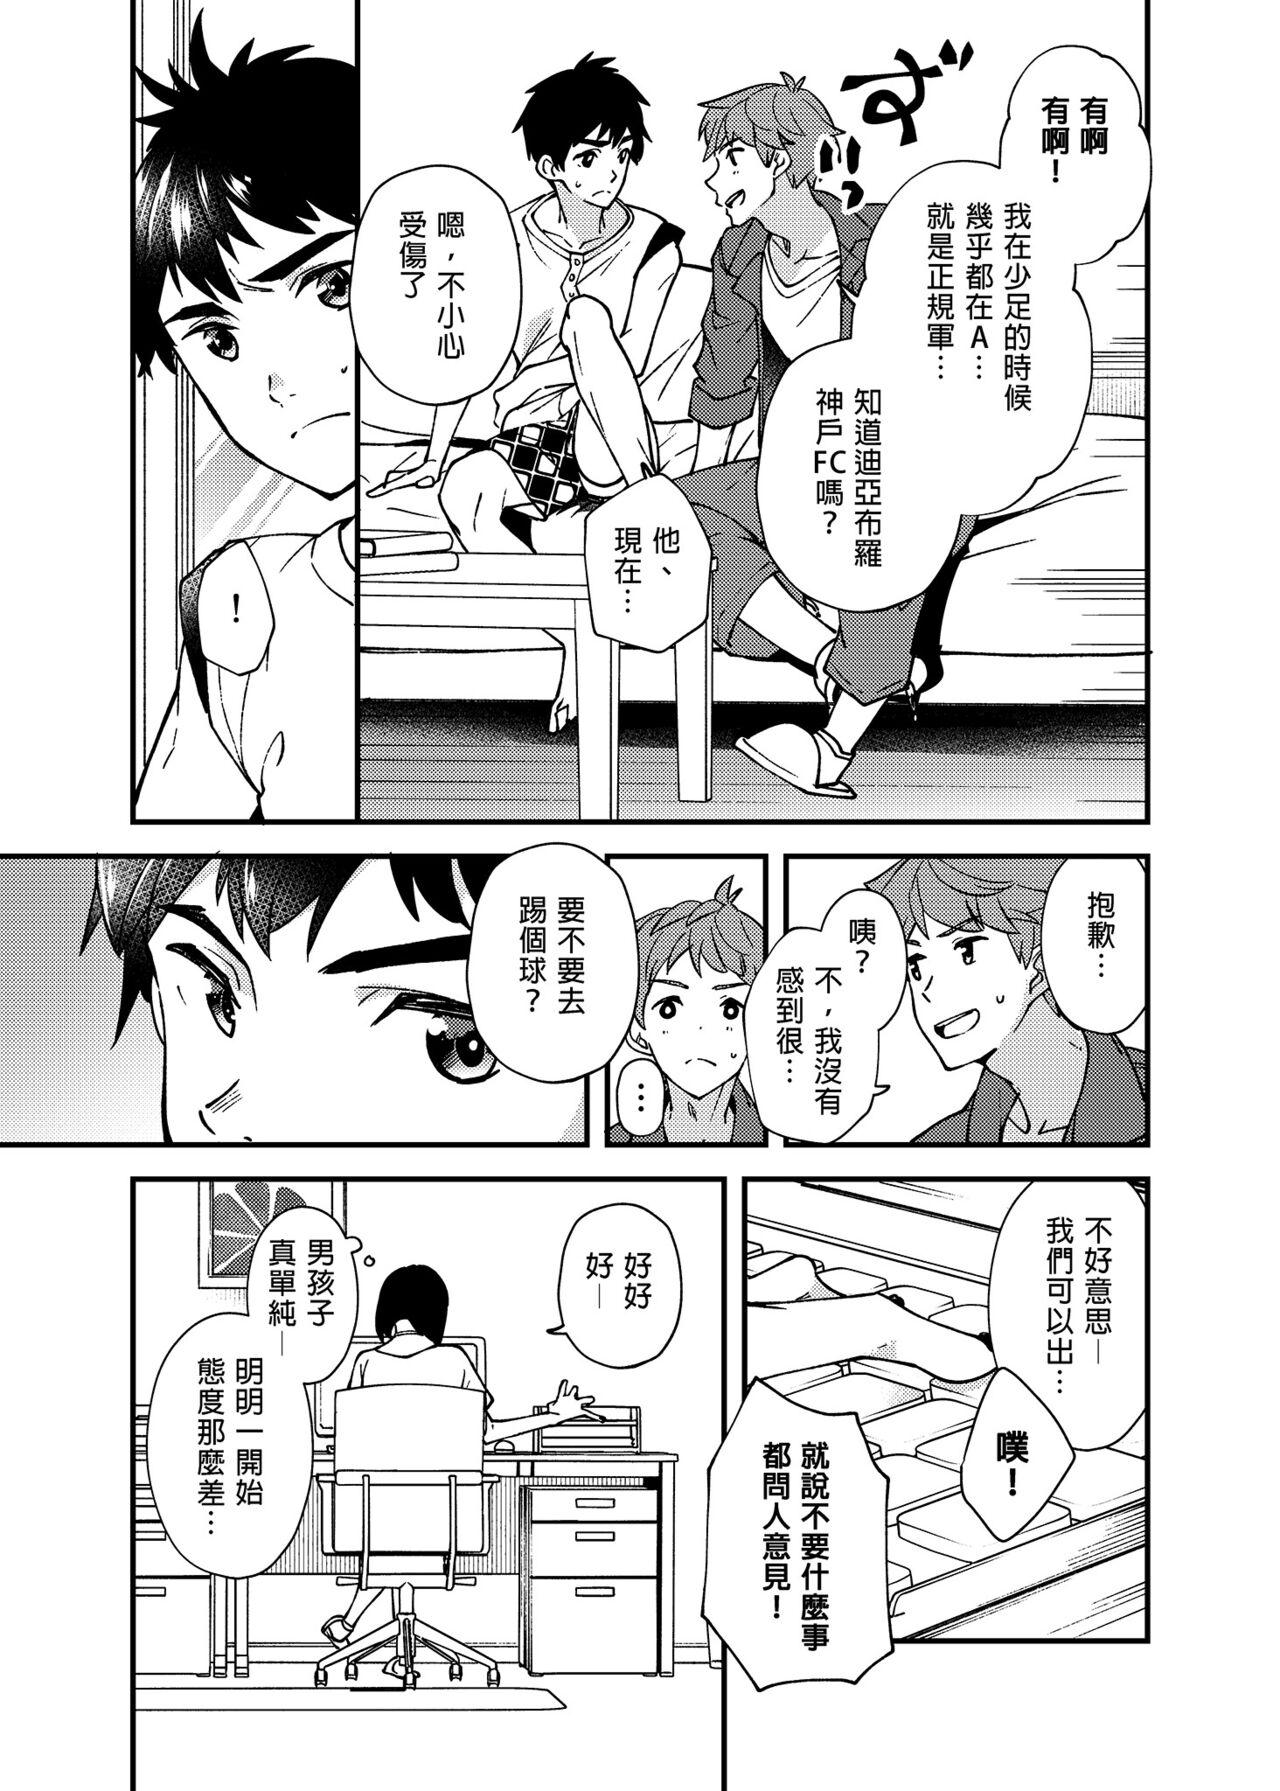 Abg Na no ka bakari no | 只有7天嗎 - Original Blow Job Contest - Page 10